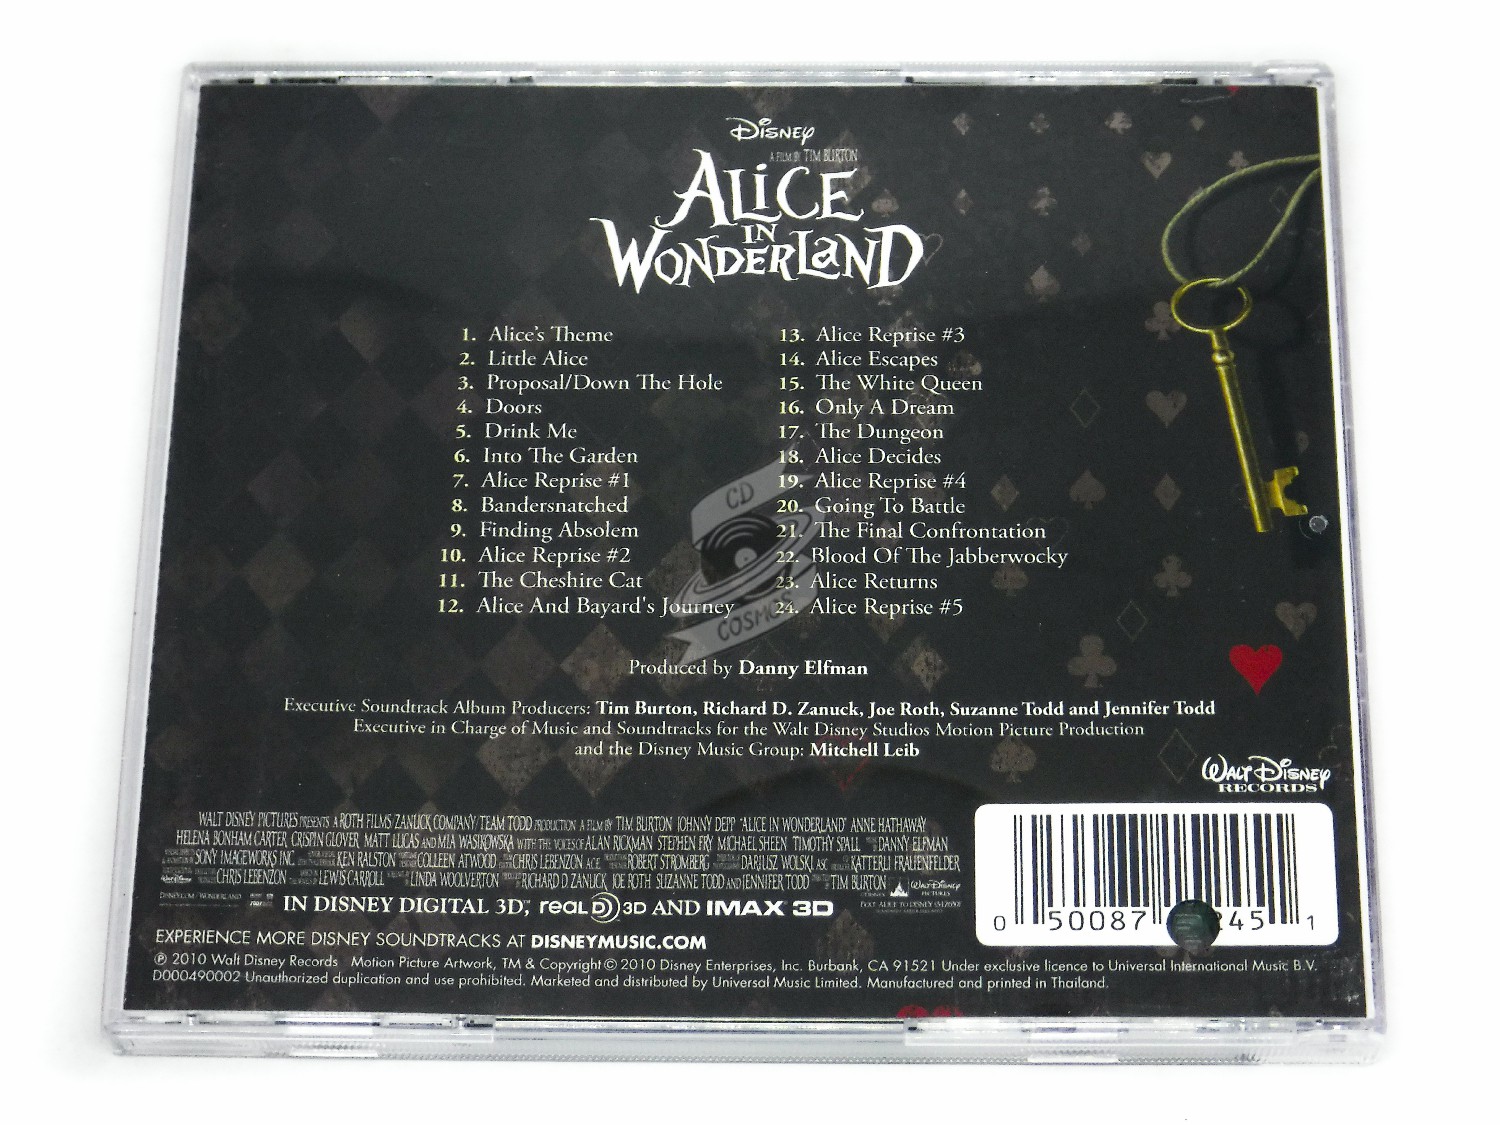 Alice's Theme (From Alice in Wonderland/Soundtrack Version